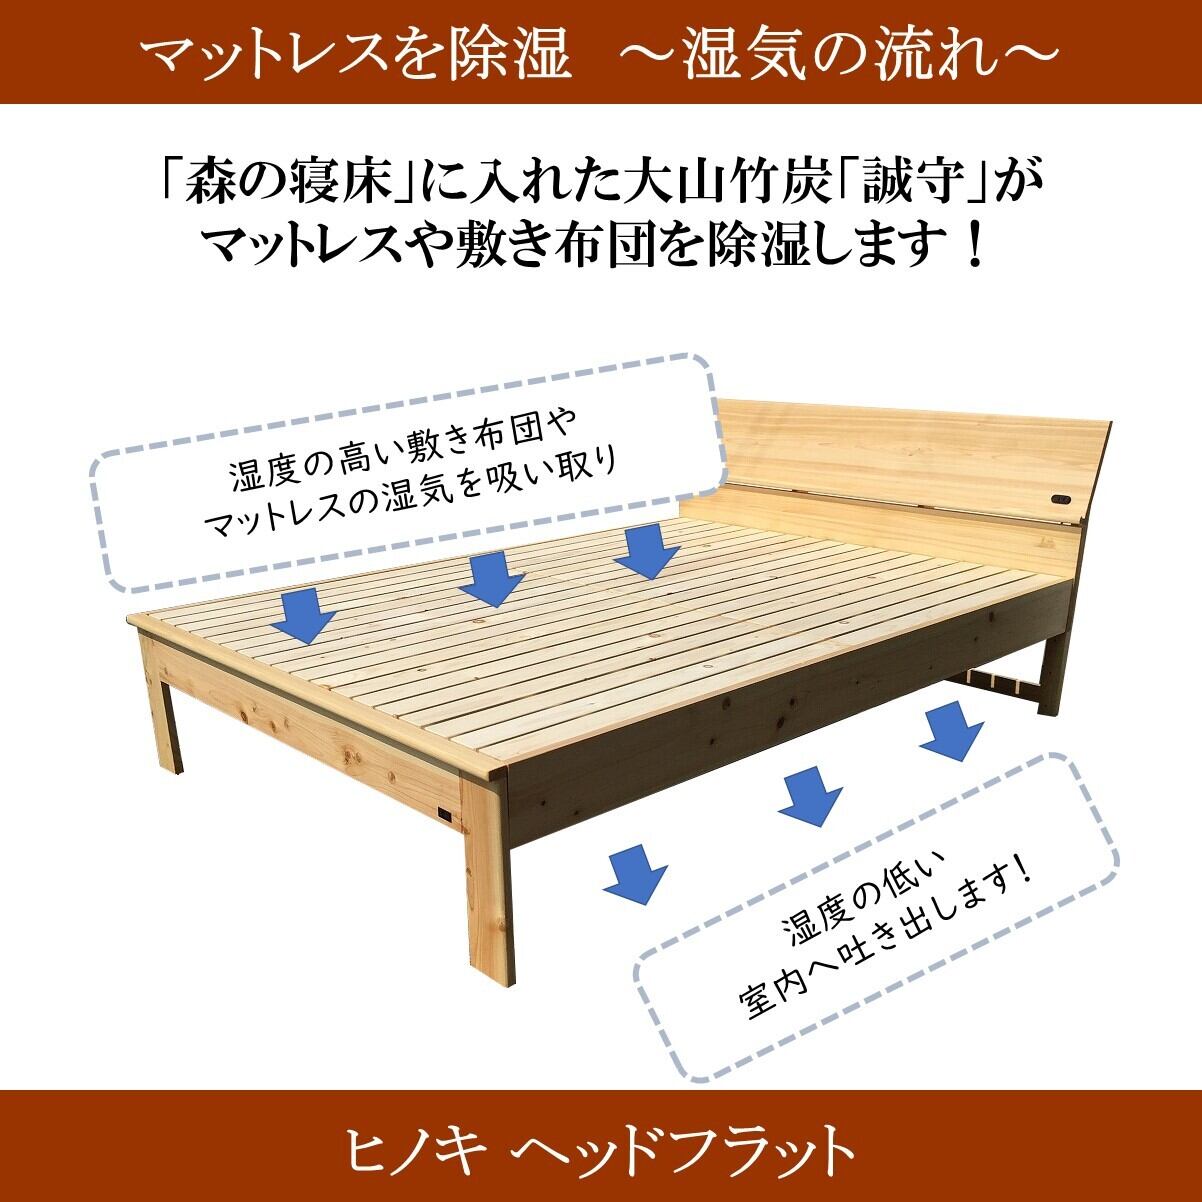 すのこベッド ダブルサイズ「森の寝床」国産ヒノキで作った竹炭入り健康ベッド